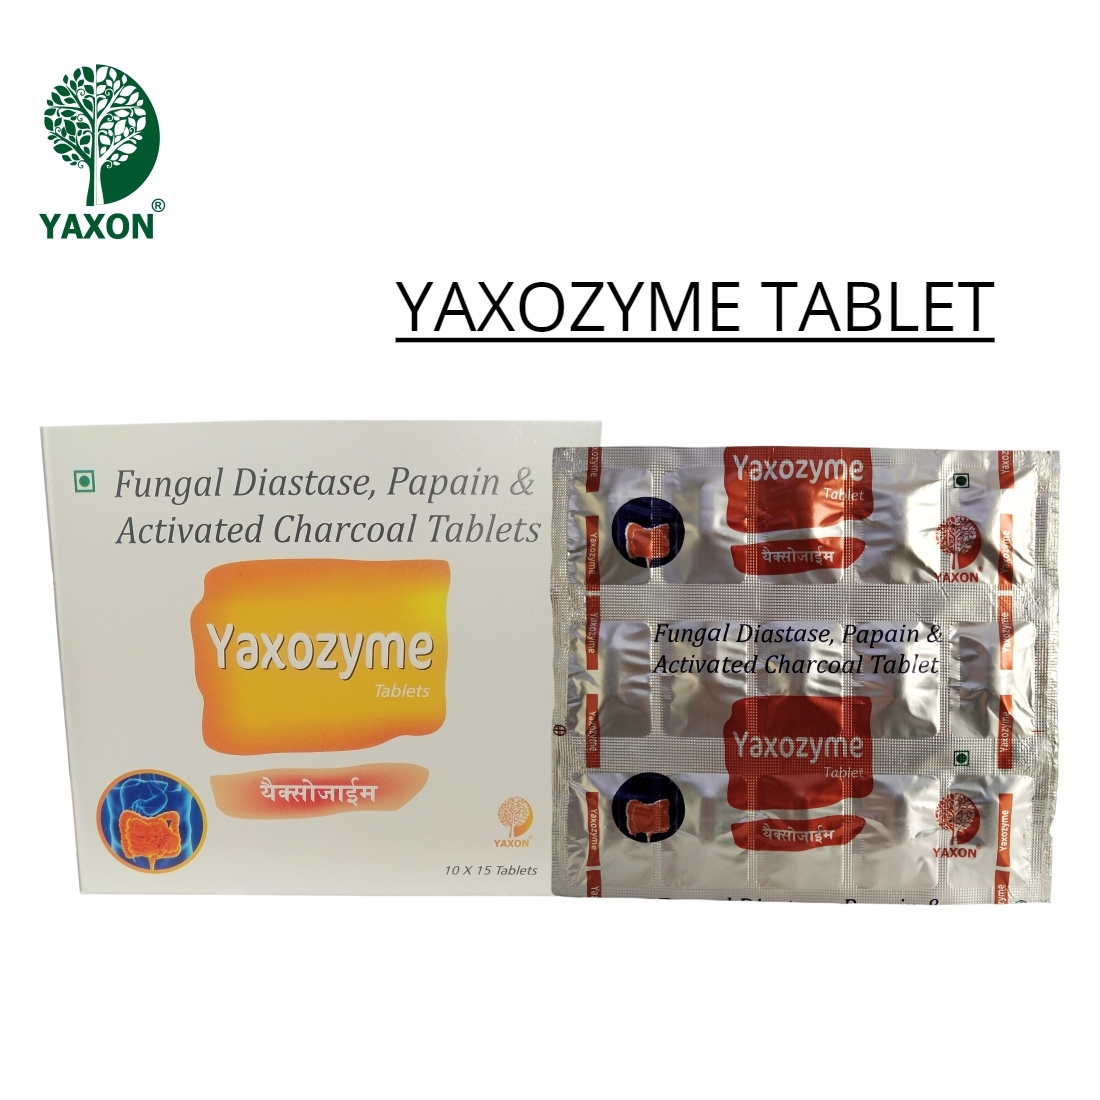 YAXON YAXOZYME DIGESTIVE Tablets